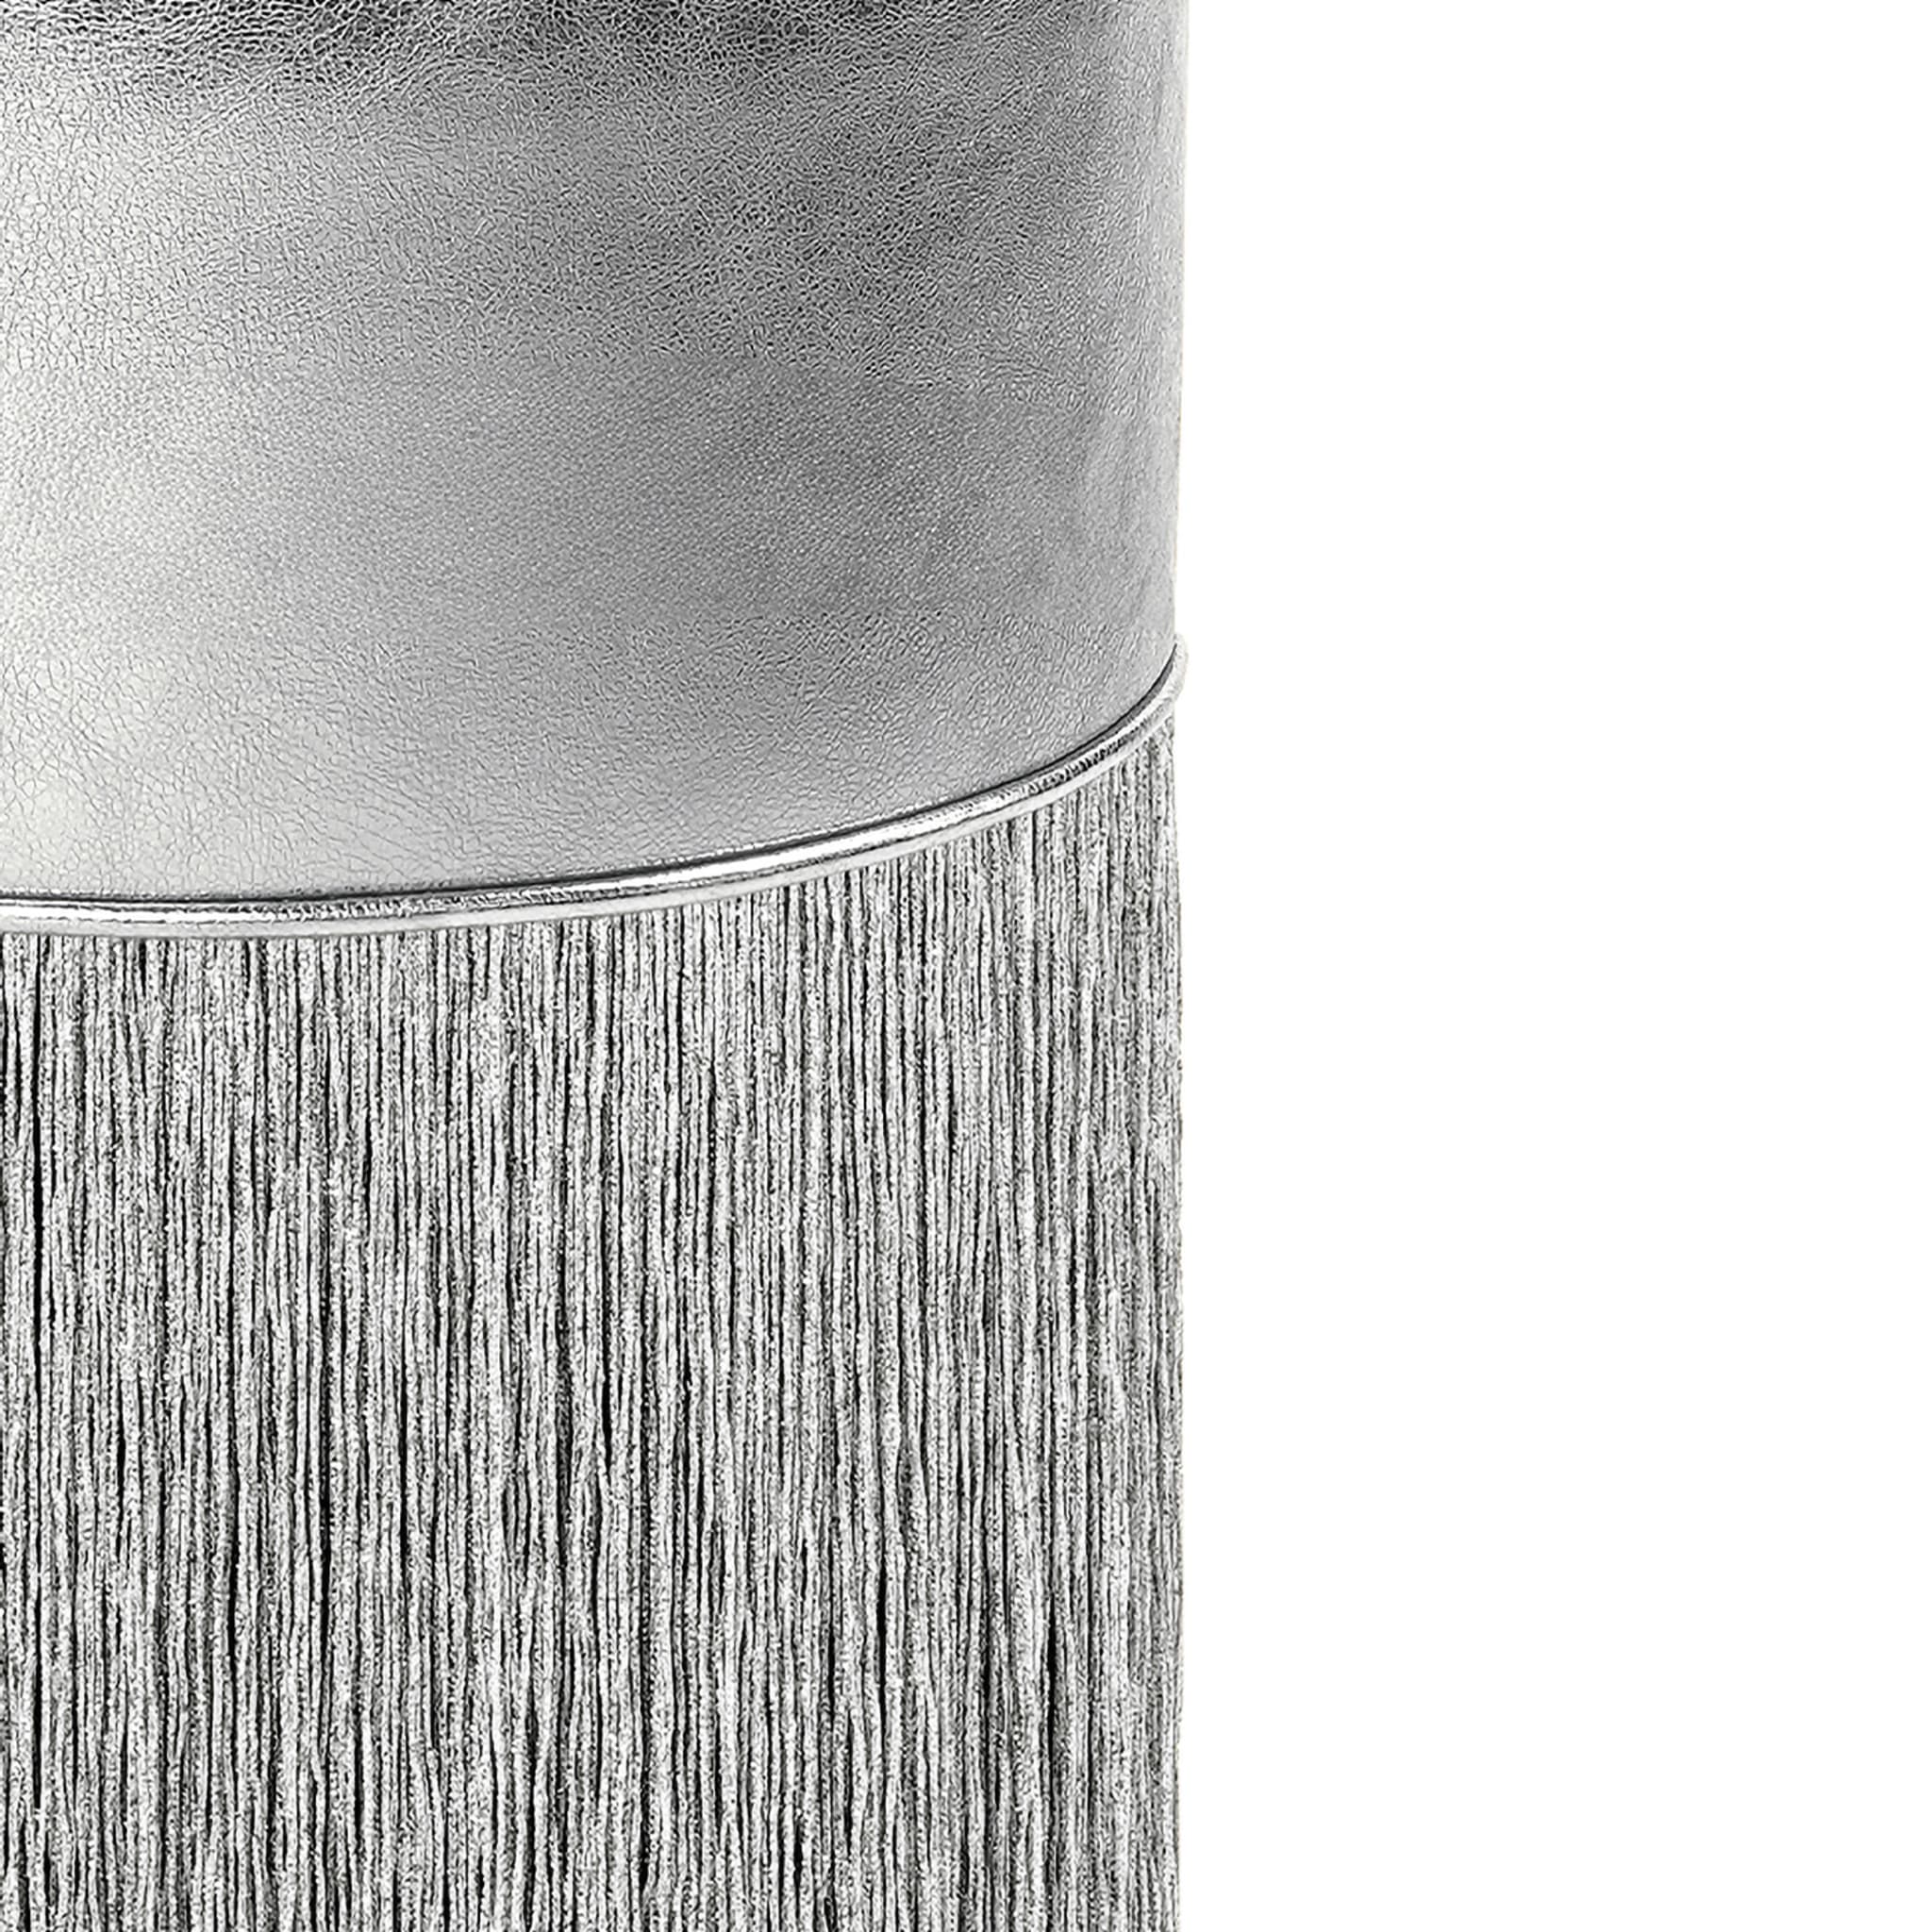 Pouf in pelle metallizzata argento brillante di Lorenza Bozzoli - Vista alternativa 1